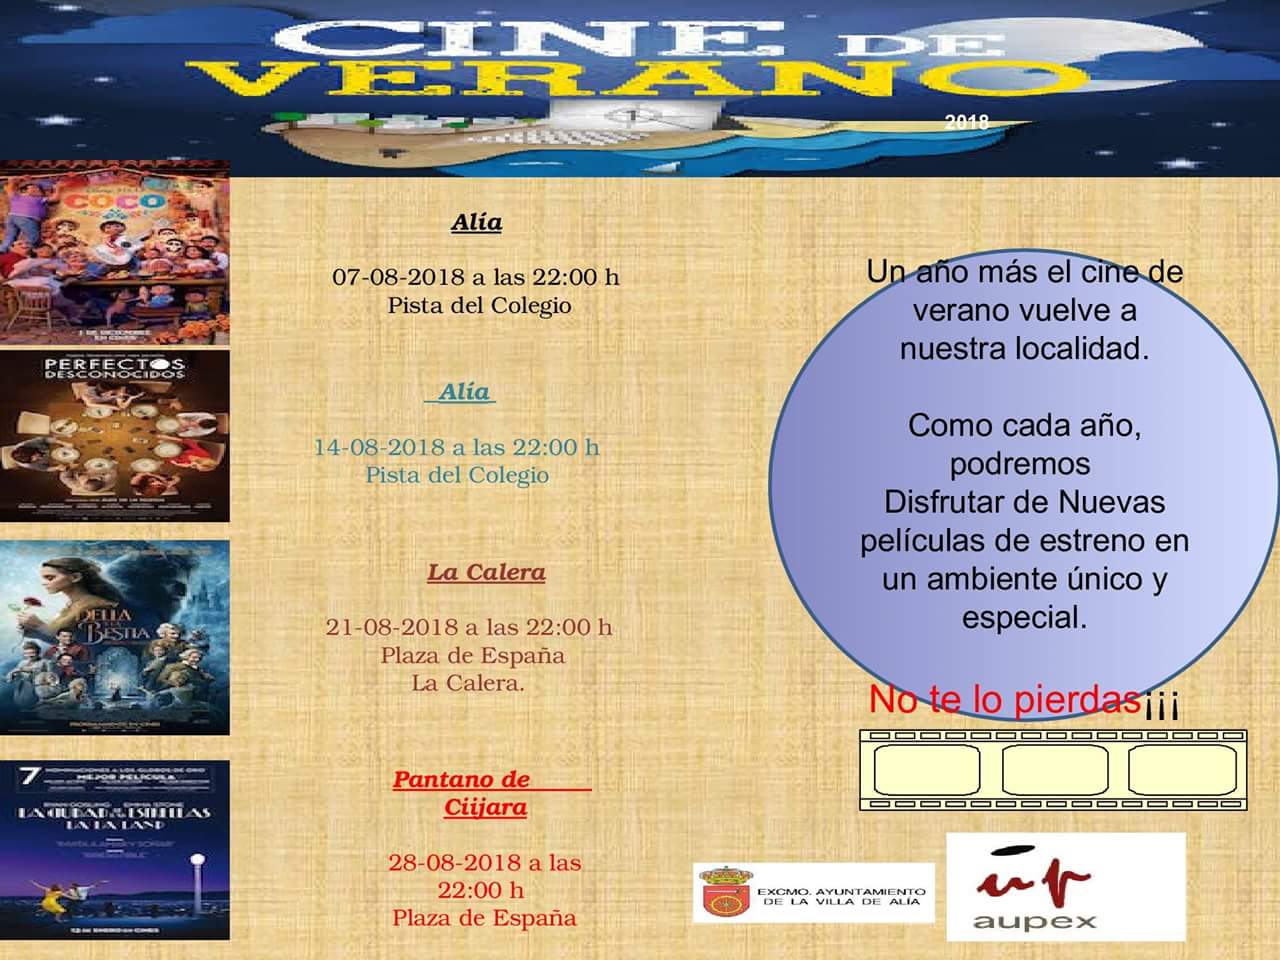 Cine de verano 2018 - Alía (Cáceres)